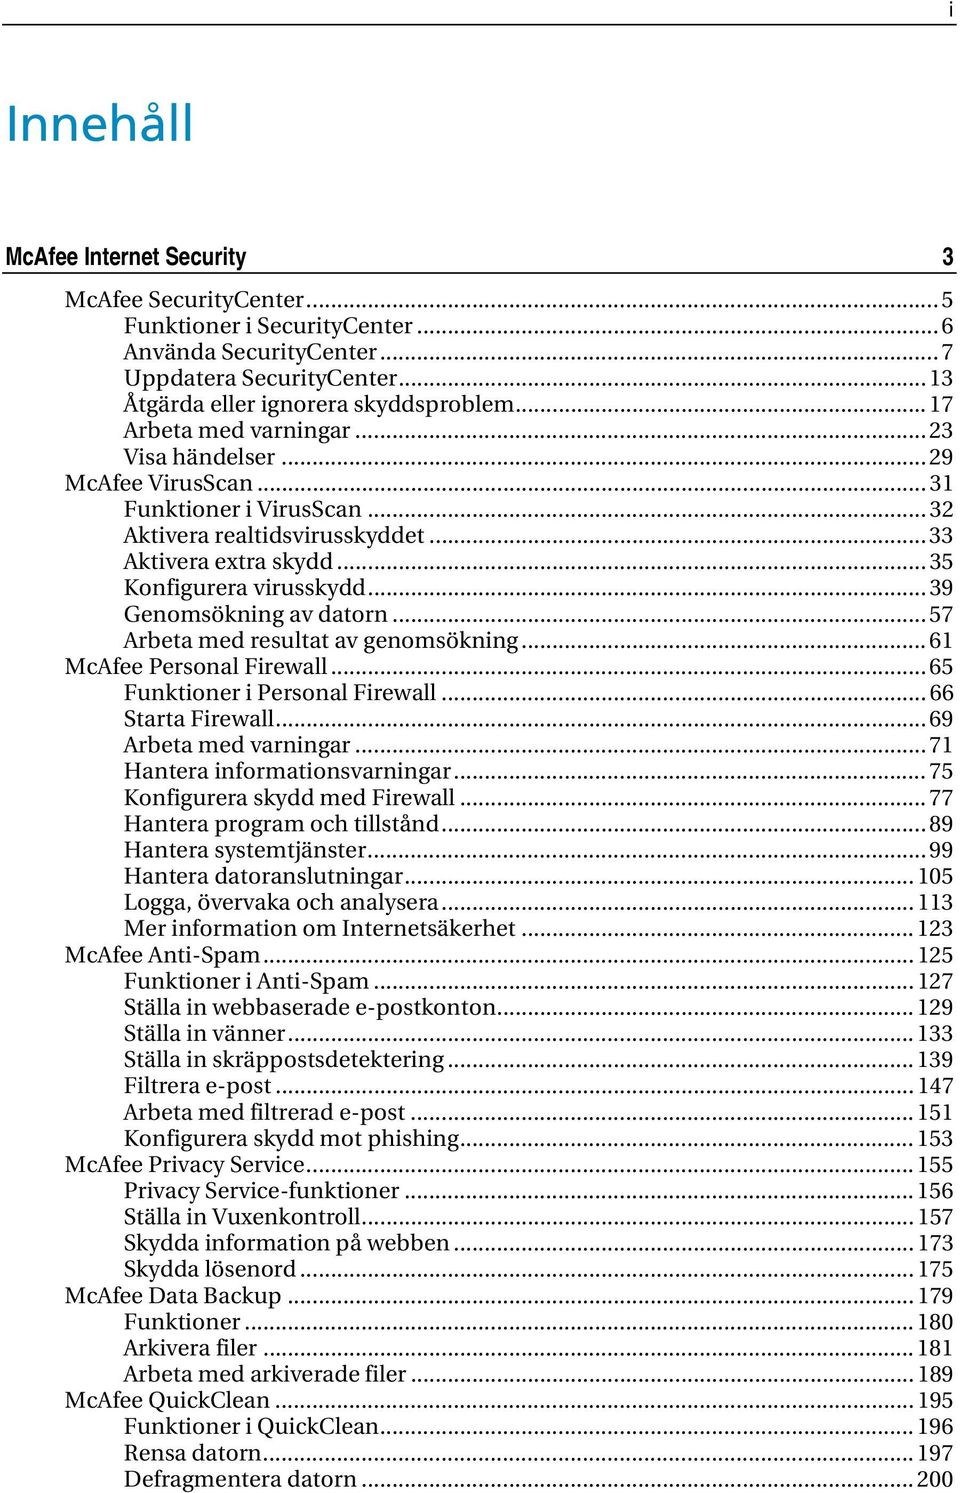 .. 39 Genomsökning av datorn... 57 Arbeta med resultat av genomsökning... 61 McAfee Personal Firewall... 65 Funktioner i Personal Firewall... 66 Starta Firewall... 69 Arbeta med varningar.